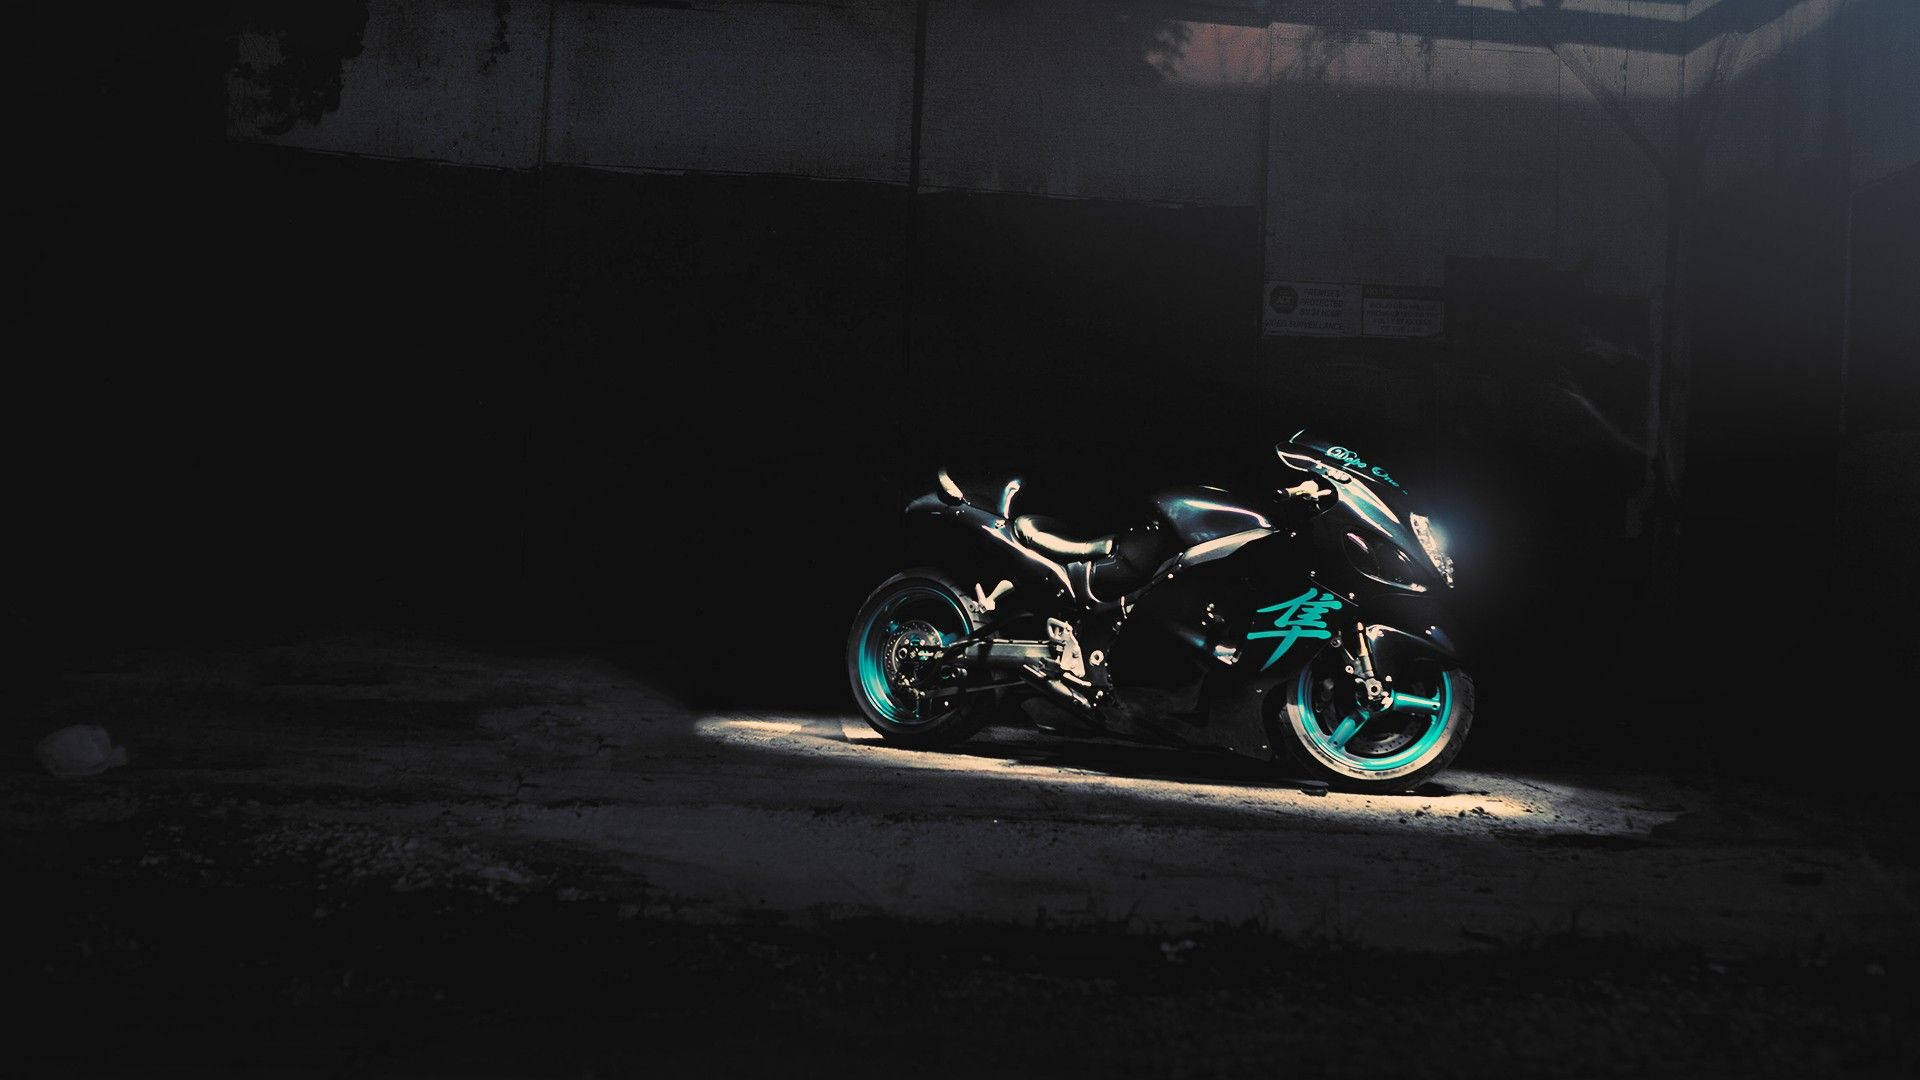 Fantastisksort Stor Motorcykel. Wallpaper